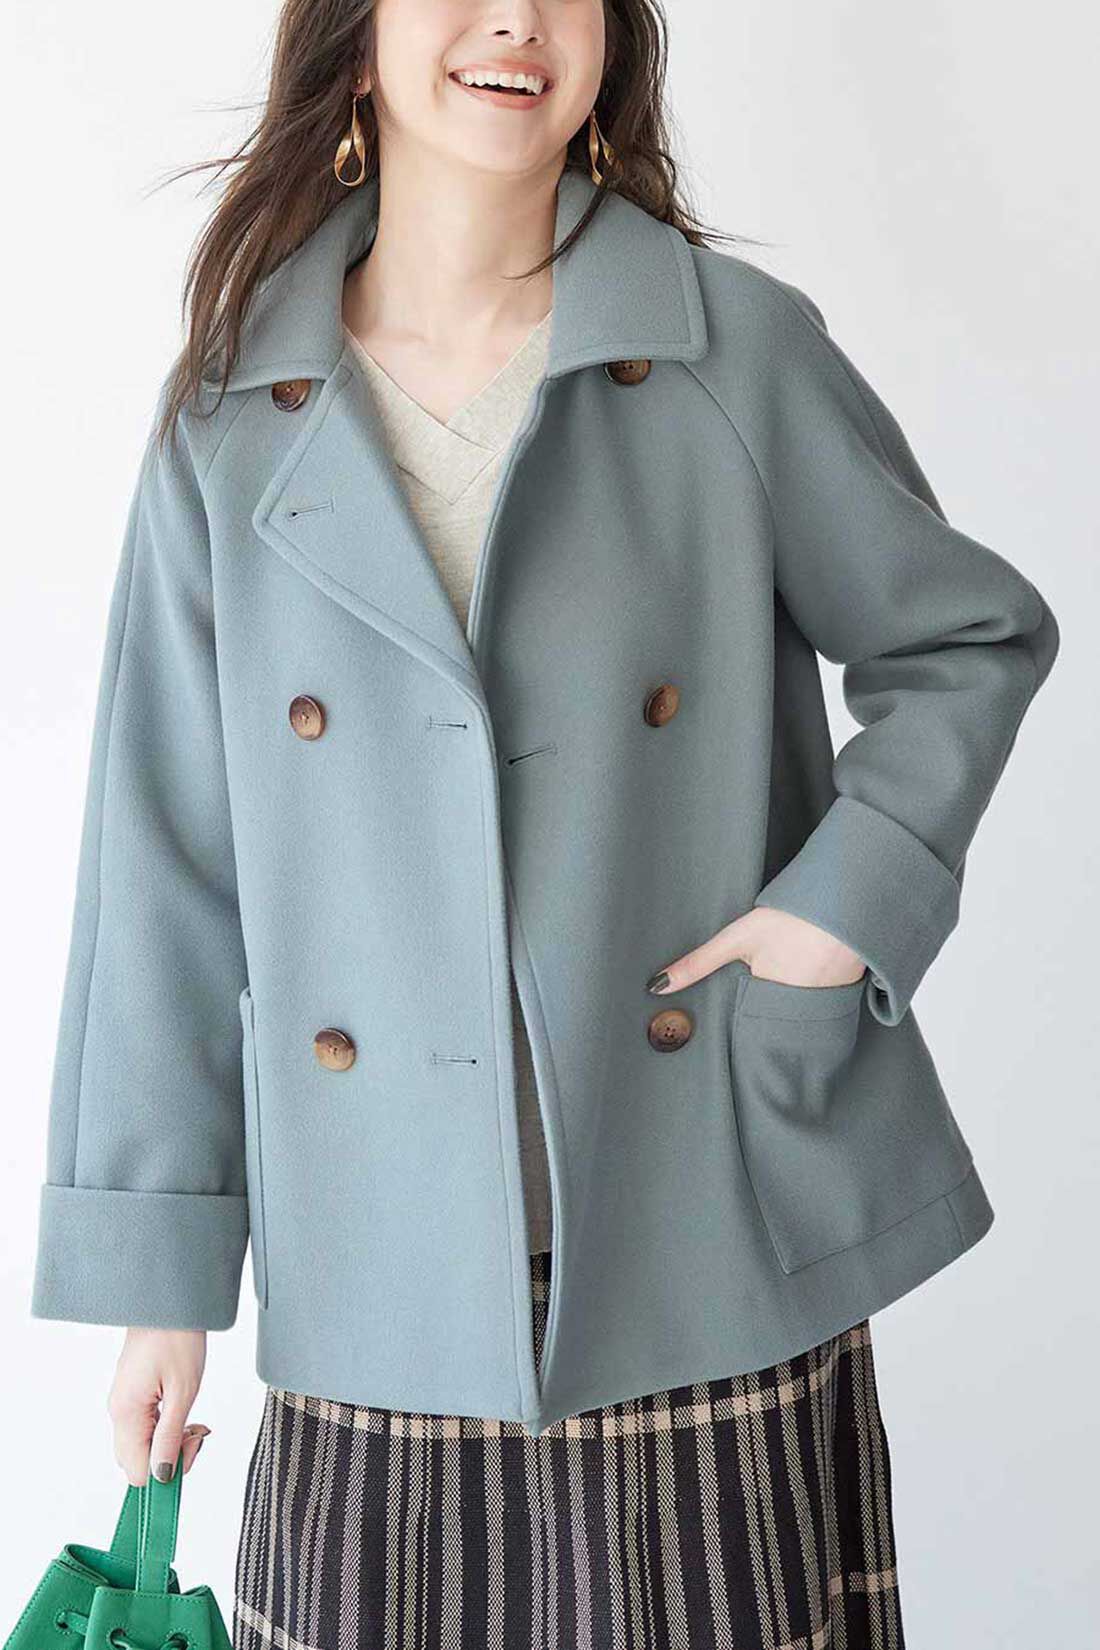 IEDIT[イディット]　着映えカラーのショート丈こなれPコート〈ブルーグリーン〉|※着用イメージです。お届けするカラーとは異なります。